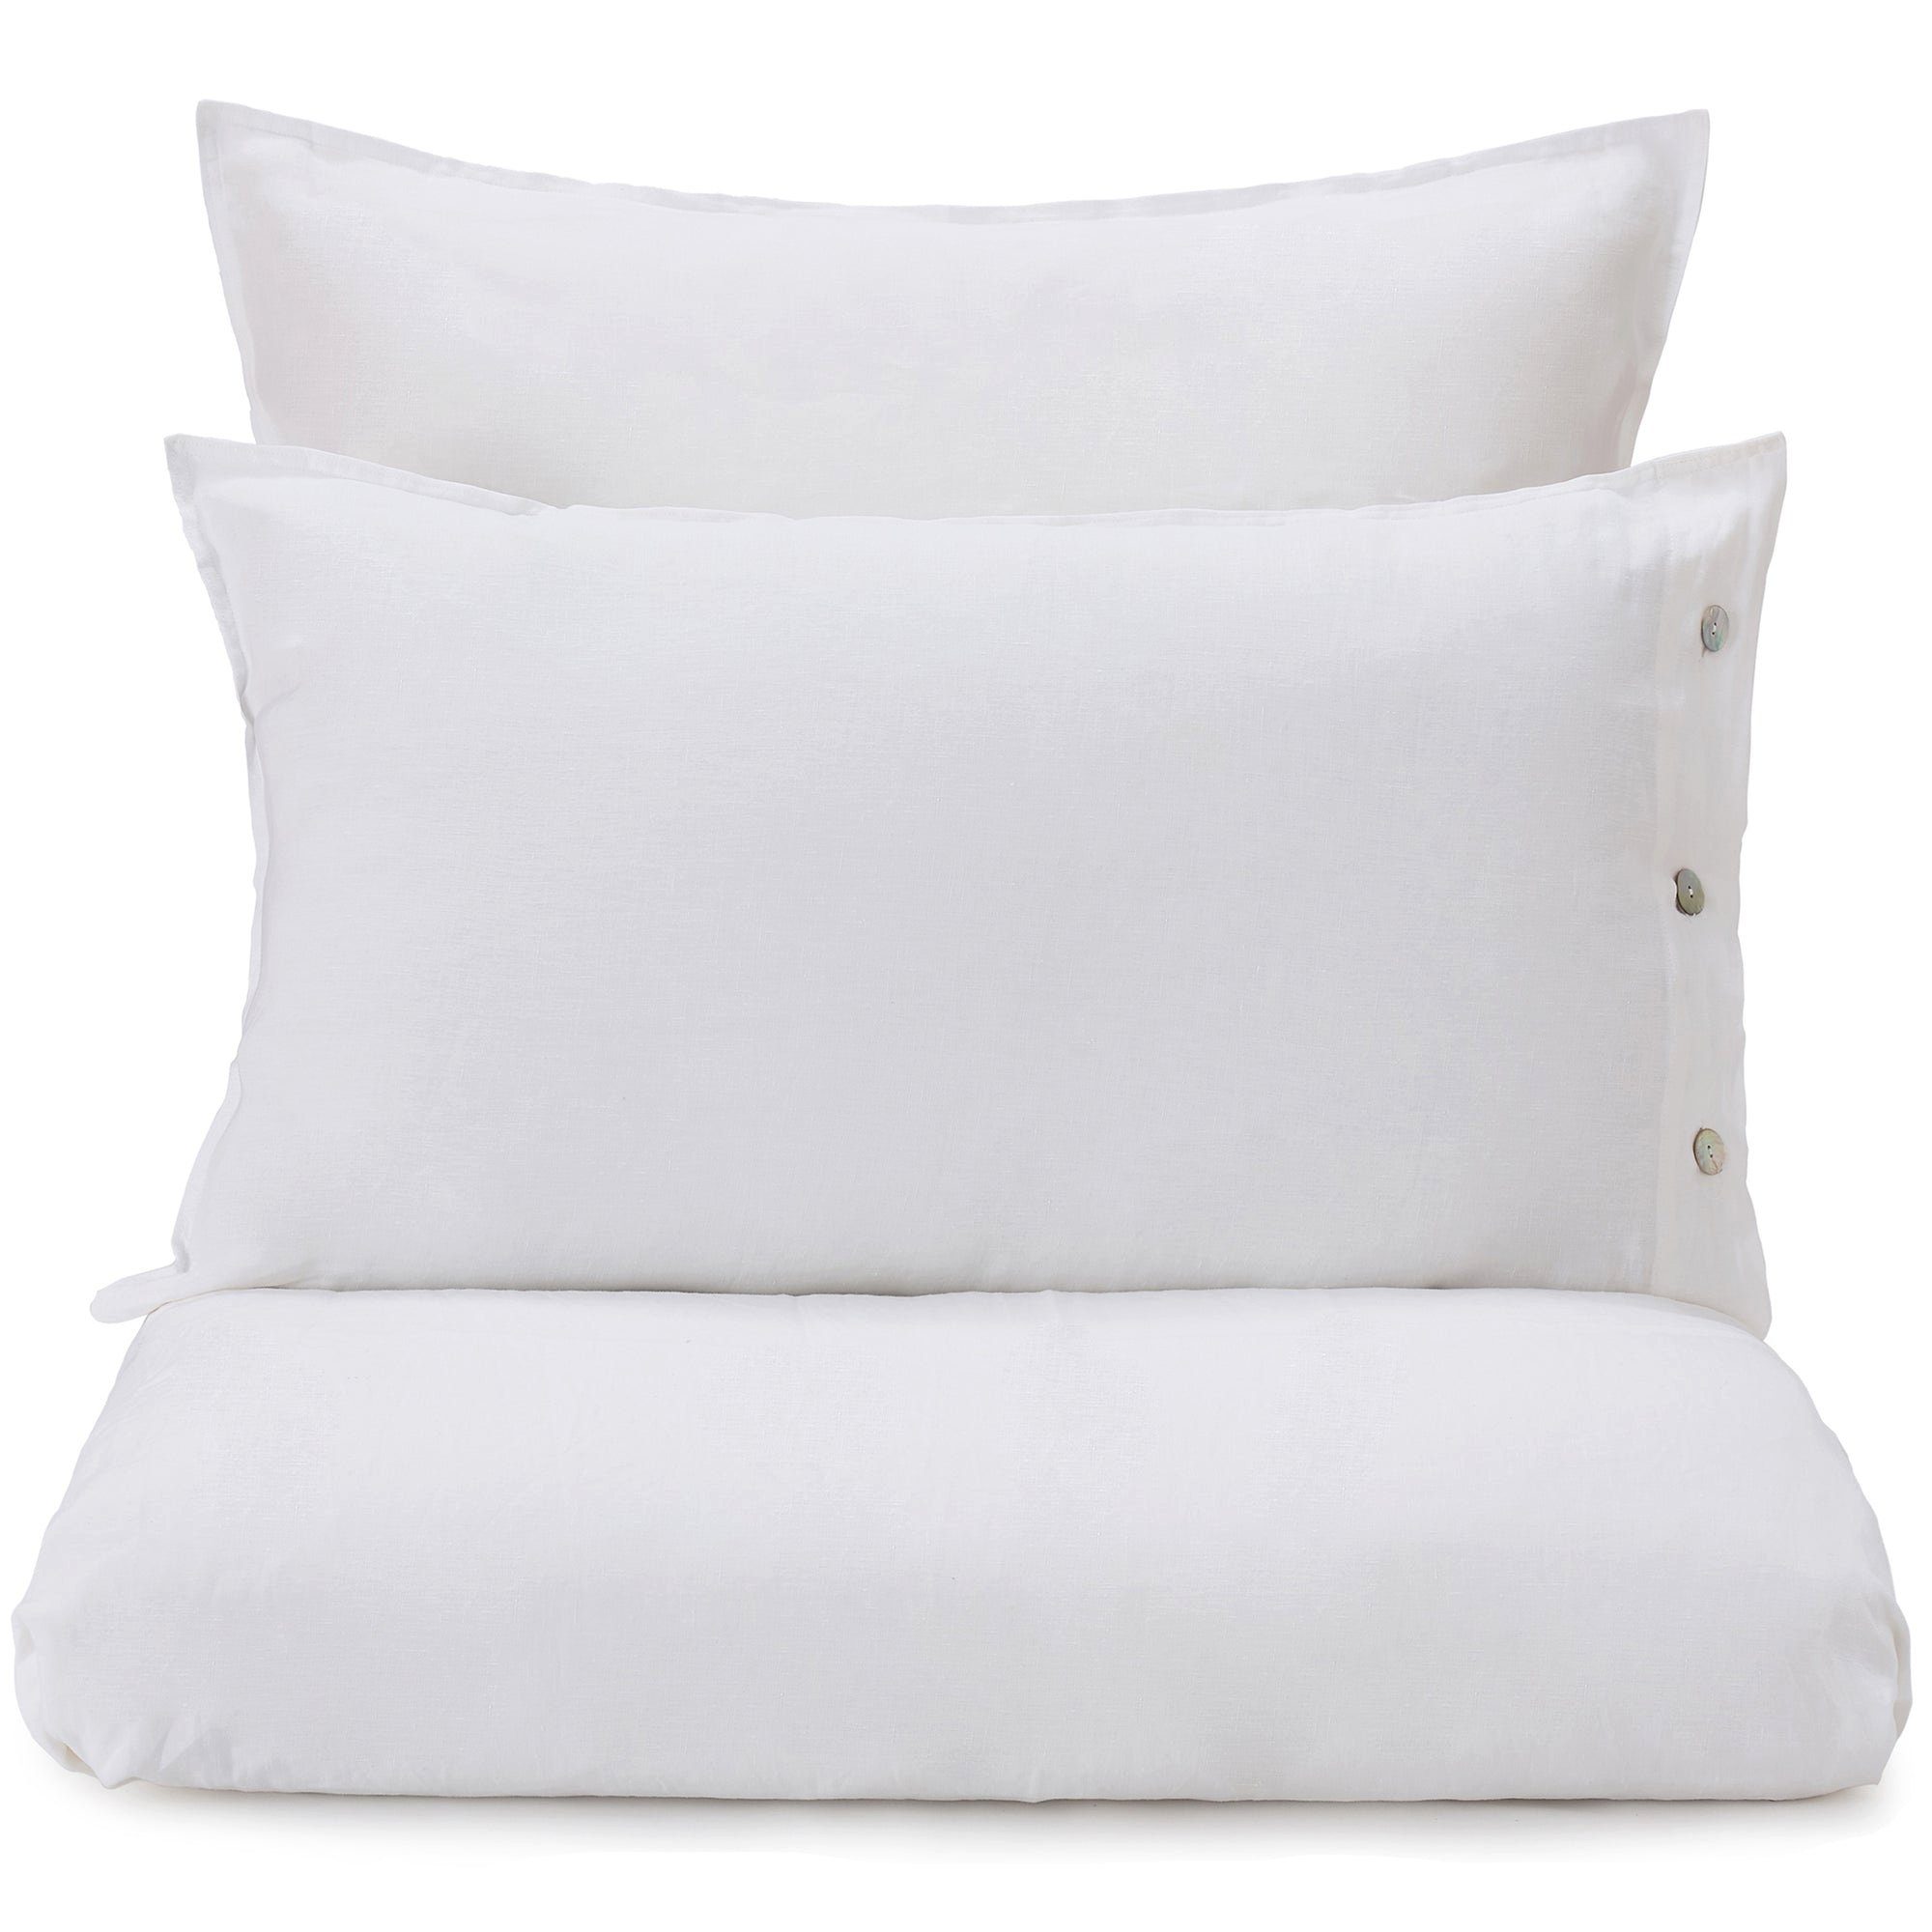 Bettbezug Bellvis Bettdeckenbezug aus 100% Leinen - 200x220 cm, Weiß, Urbanara (1 St), Schlicht & sanft strukturiert, mit Perlmuttknöpfen, aus reinem Leinen